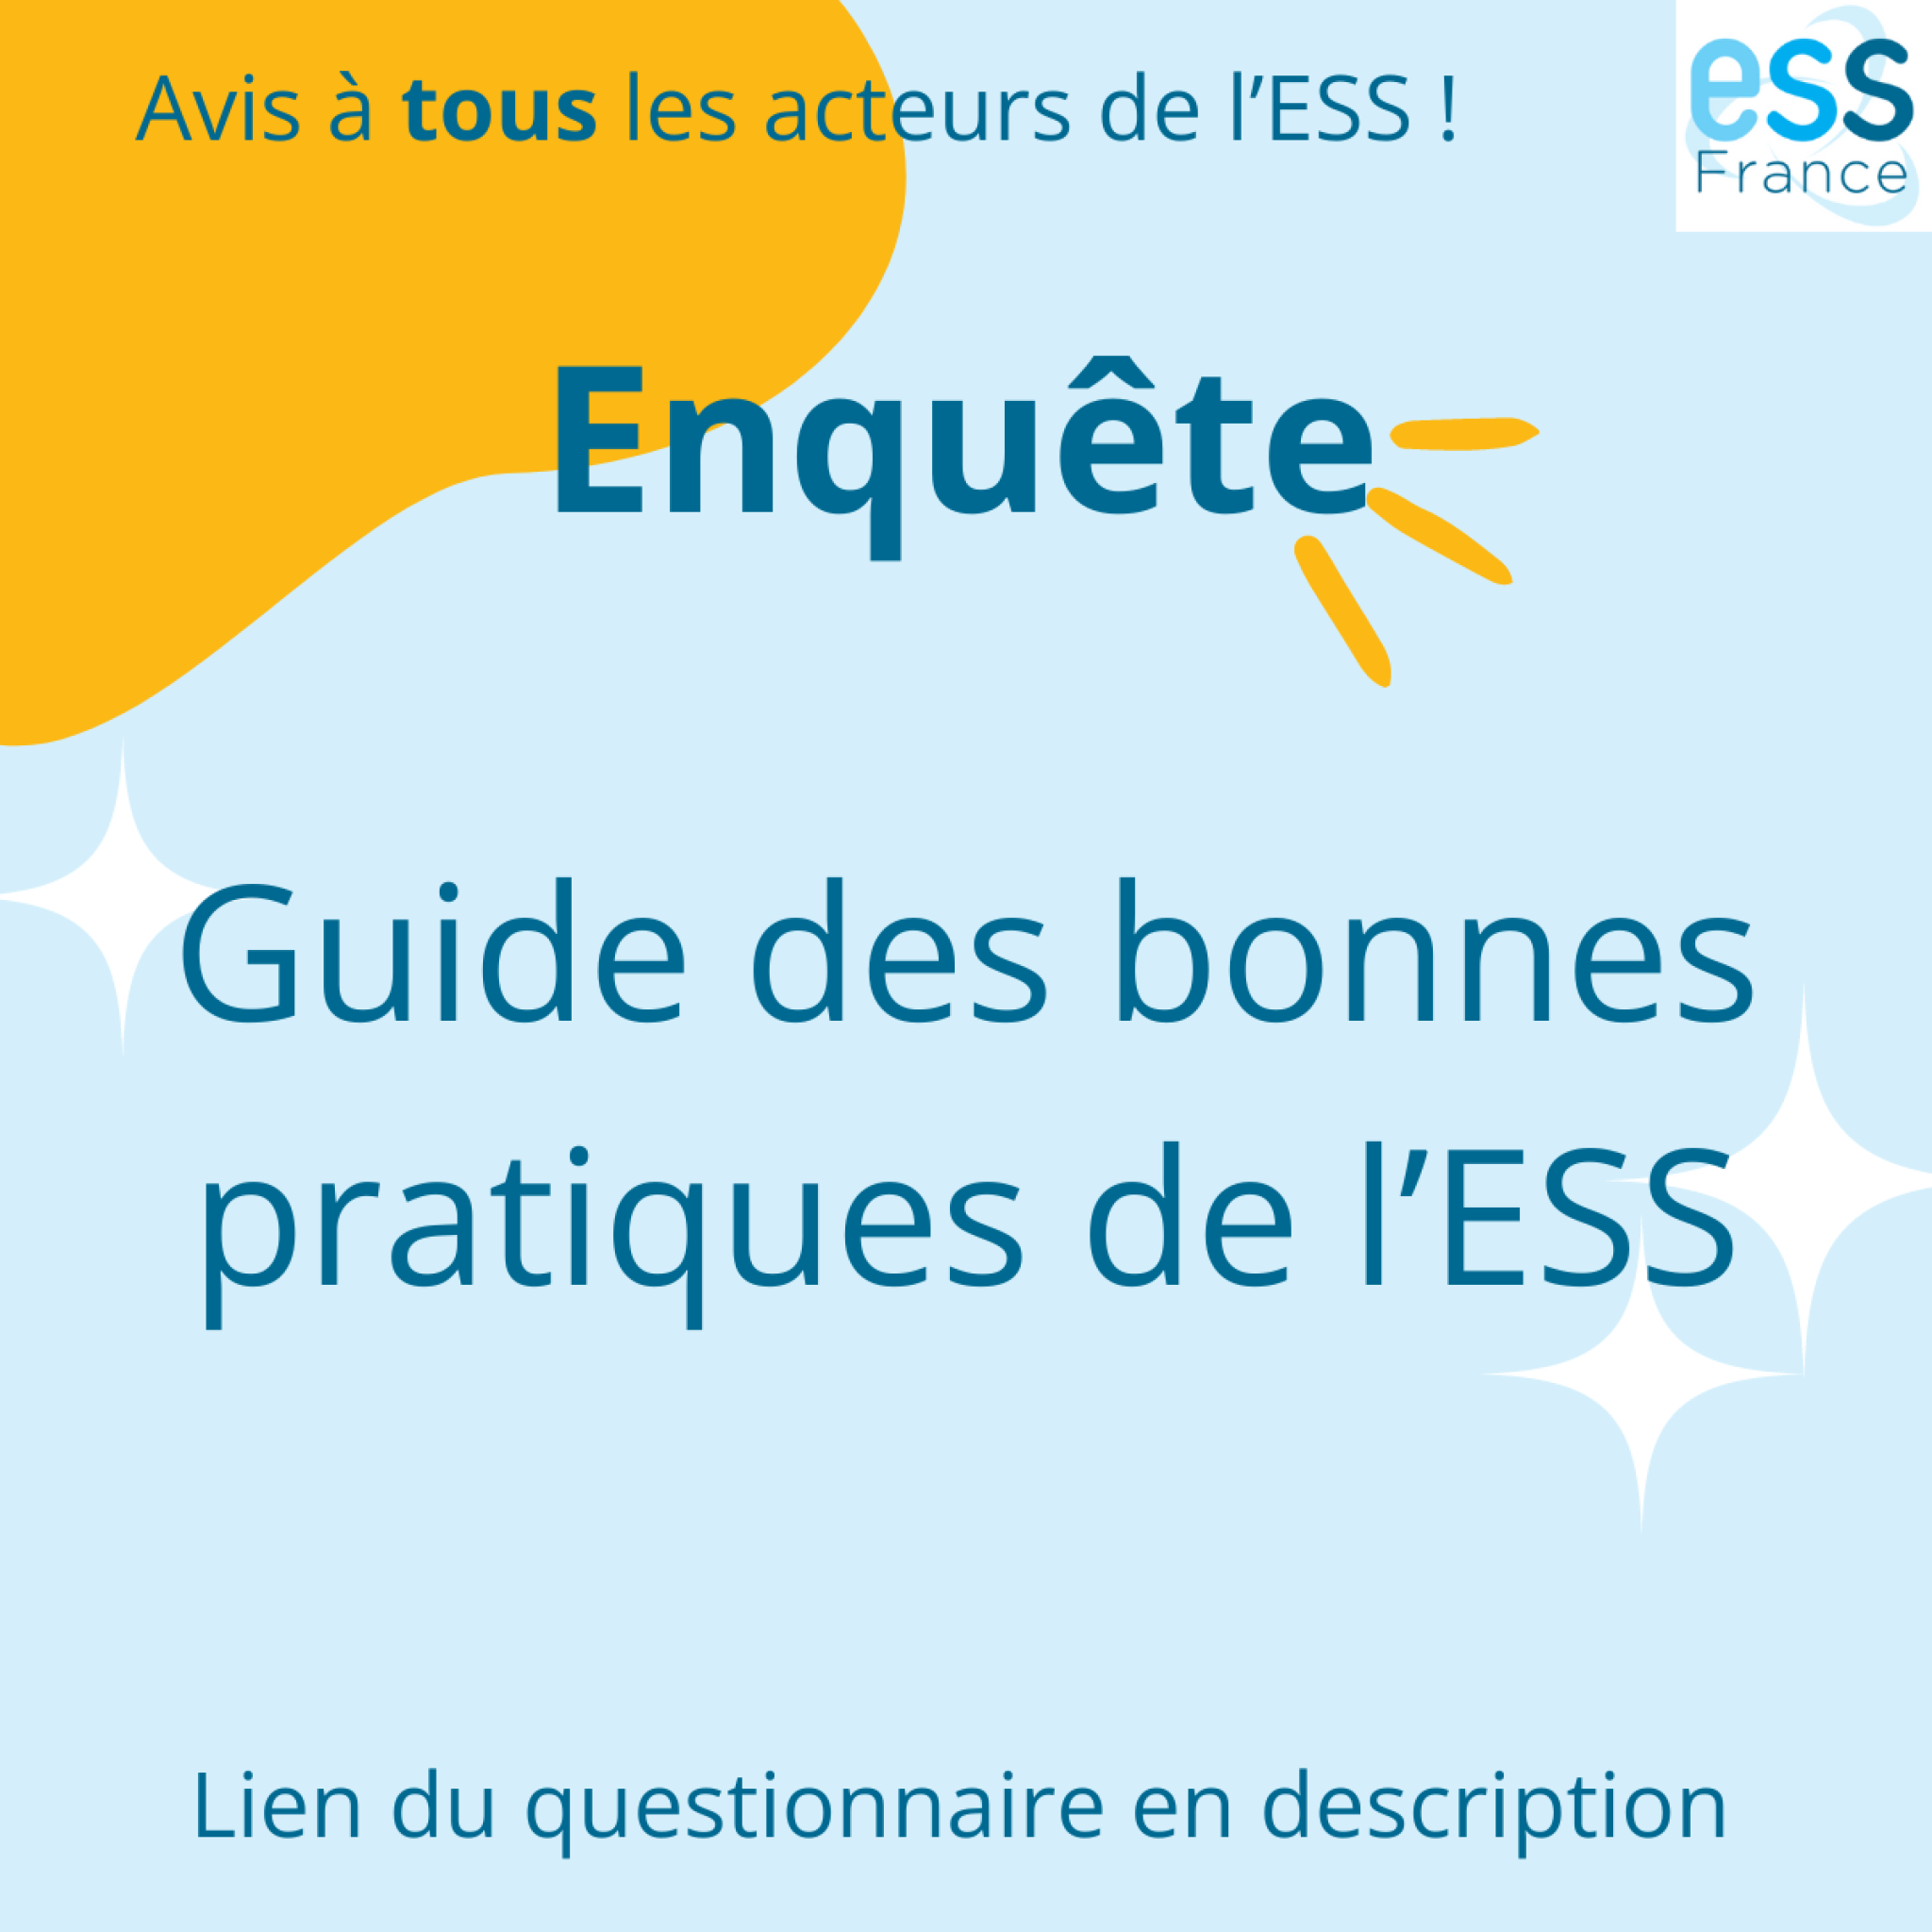 ESS France lance une enquête sur le guide des bonnes pratiques, à destination de l’ensemble des acteurs de l’ESS